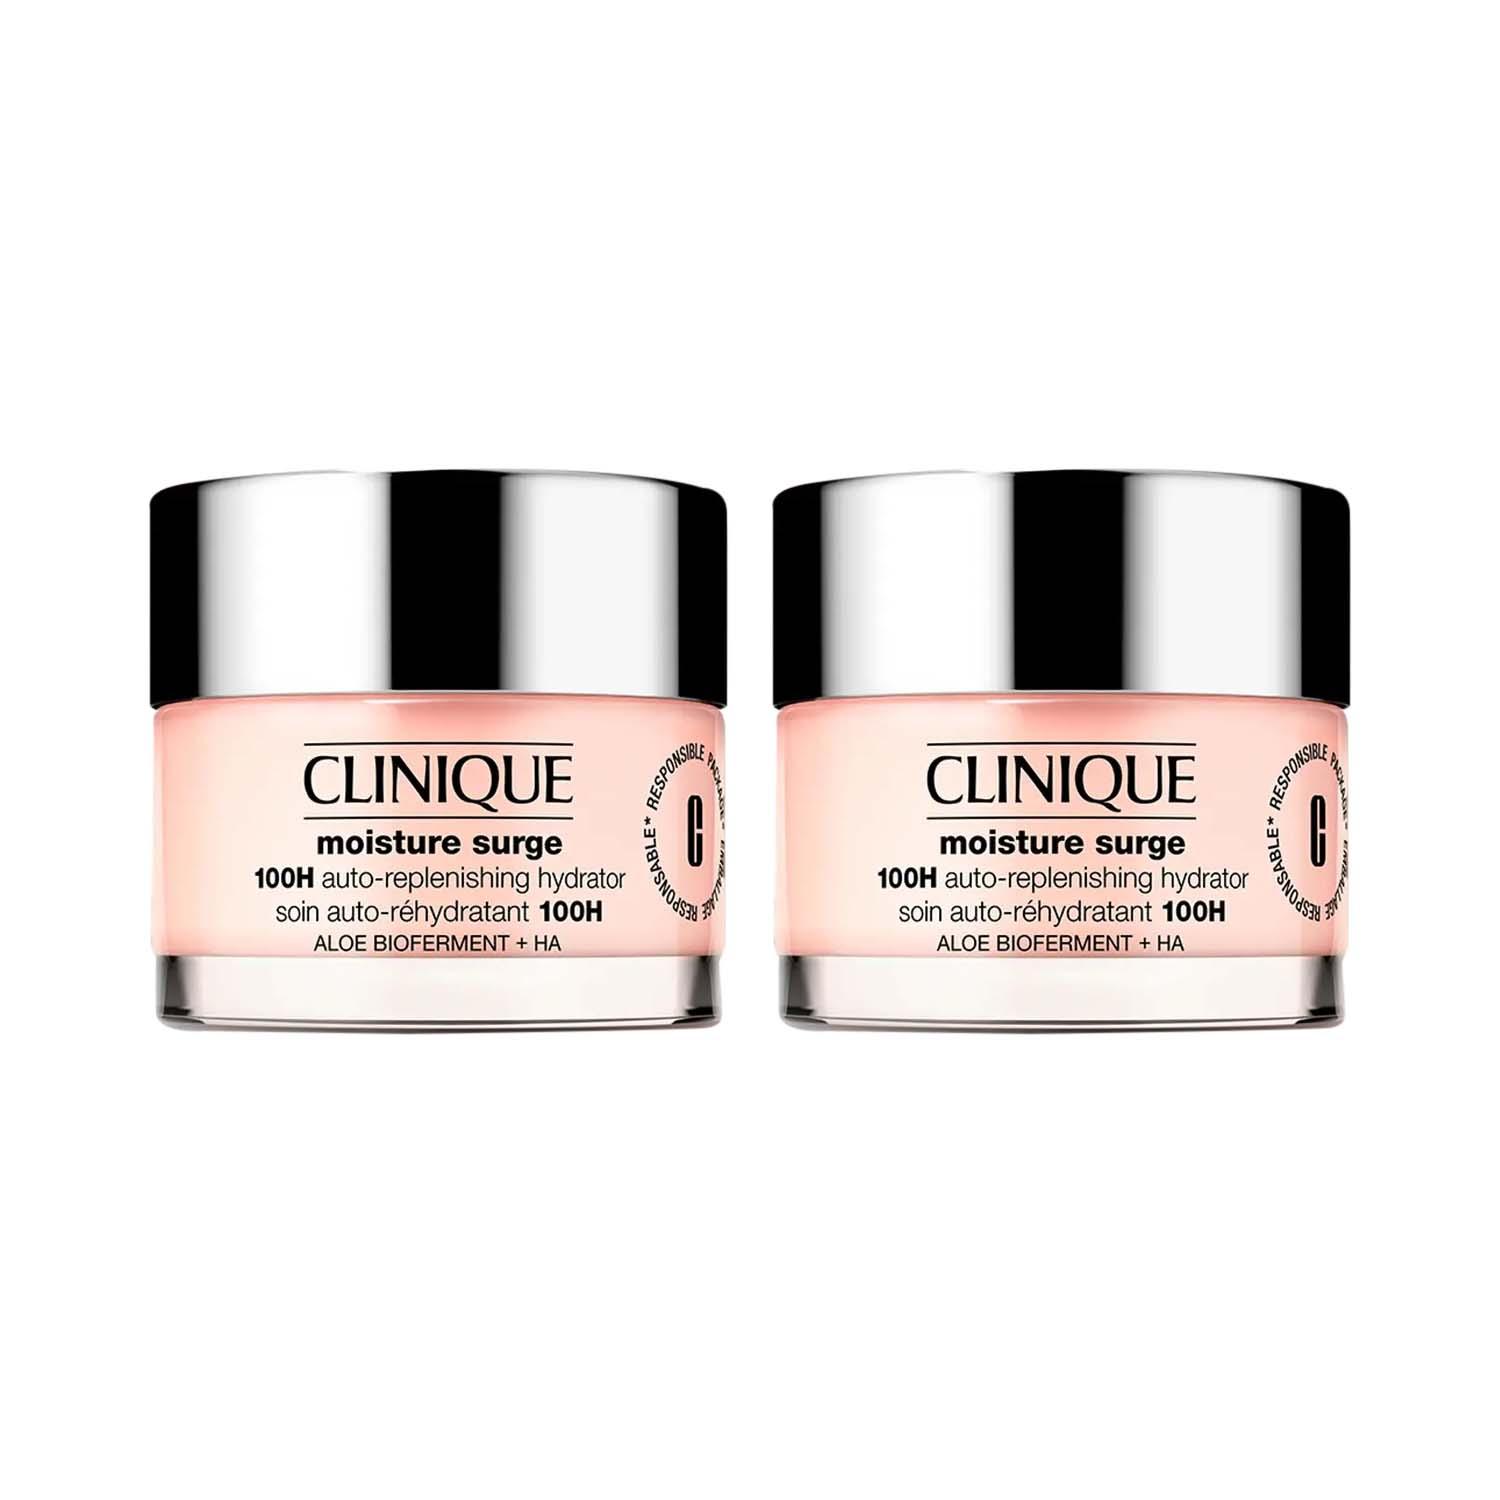 CLINIQUE | CLINIQUE Mositure surge (50 ml + 50 ml) Duo Combo